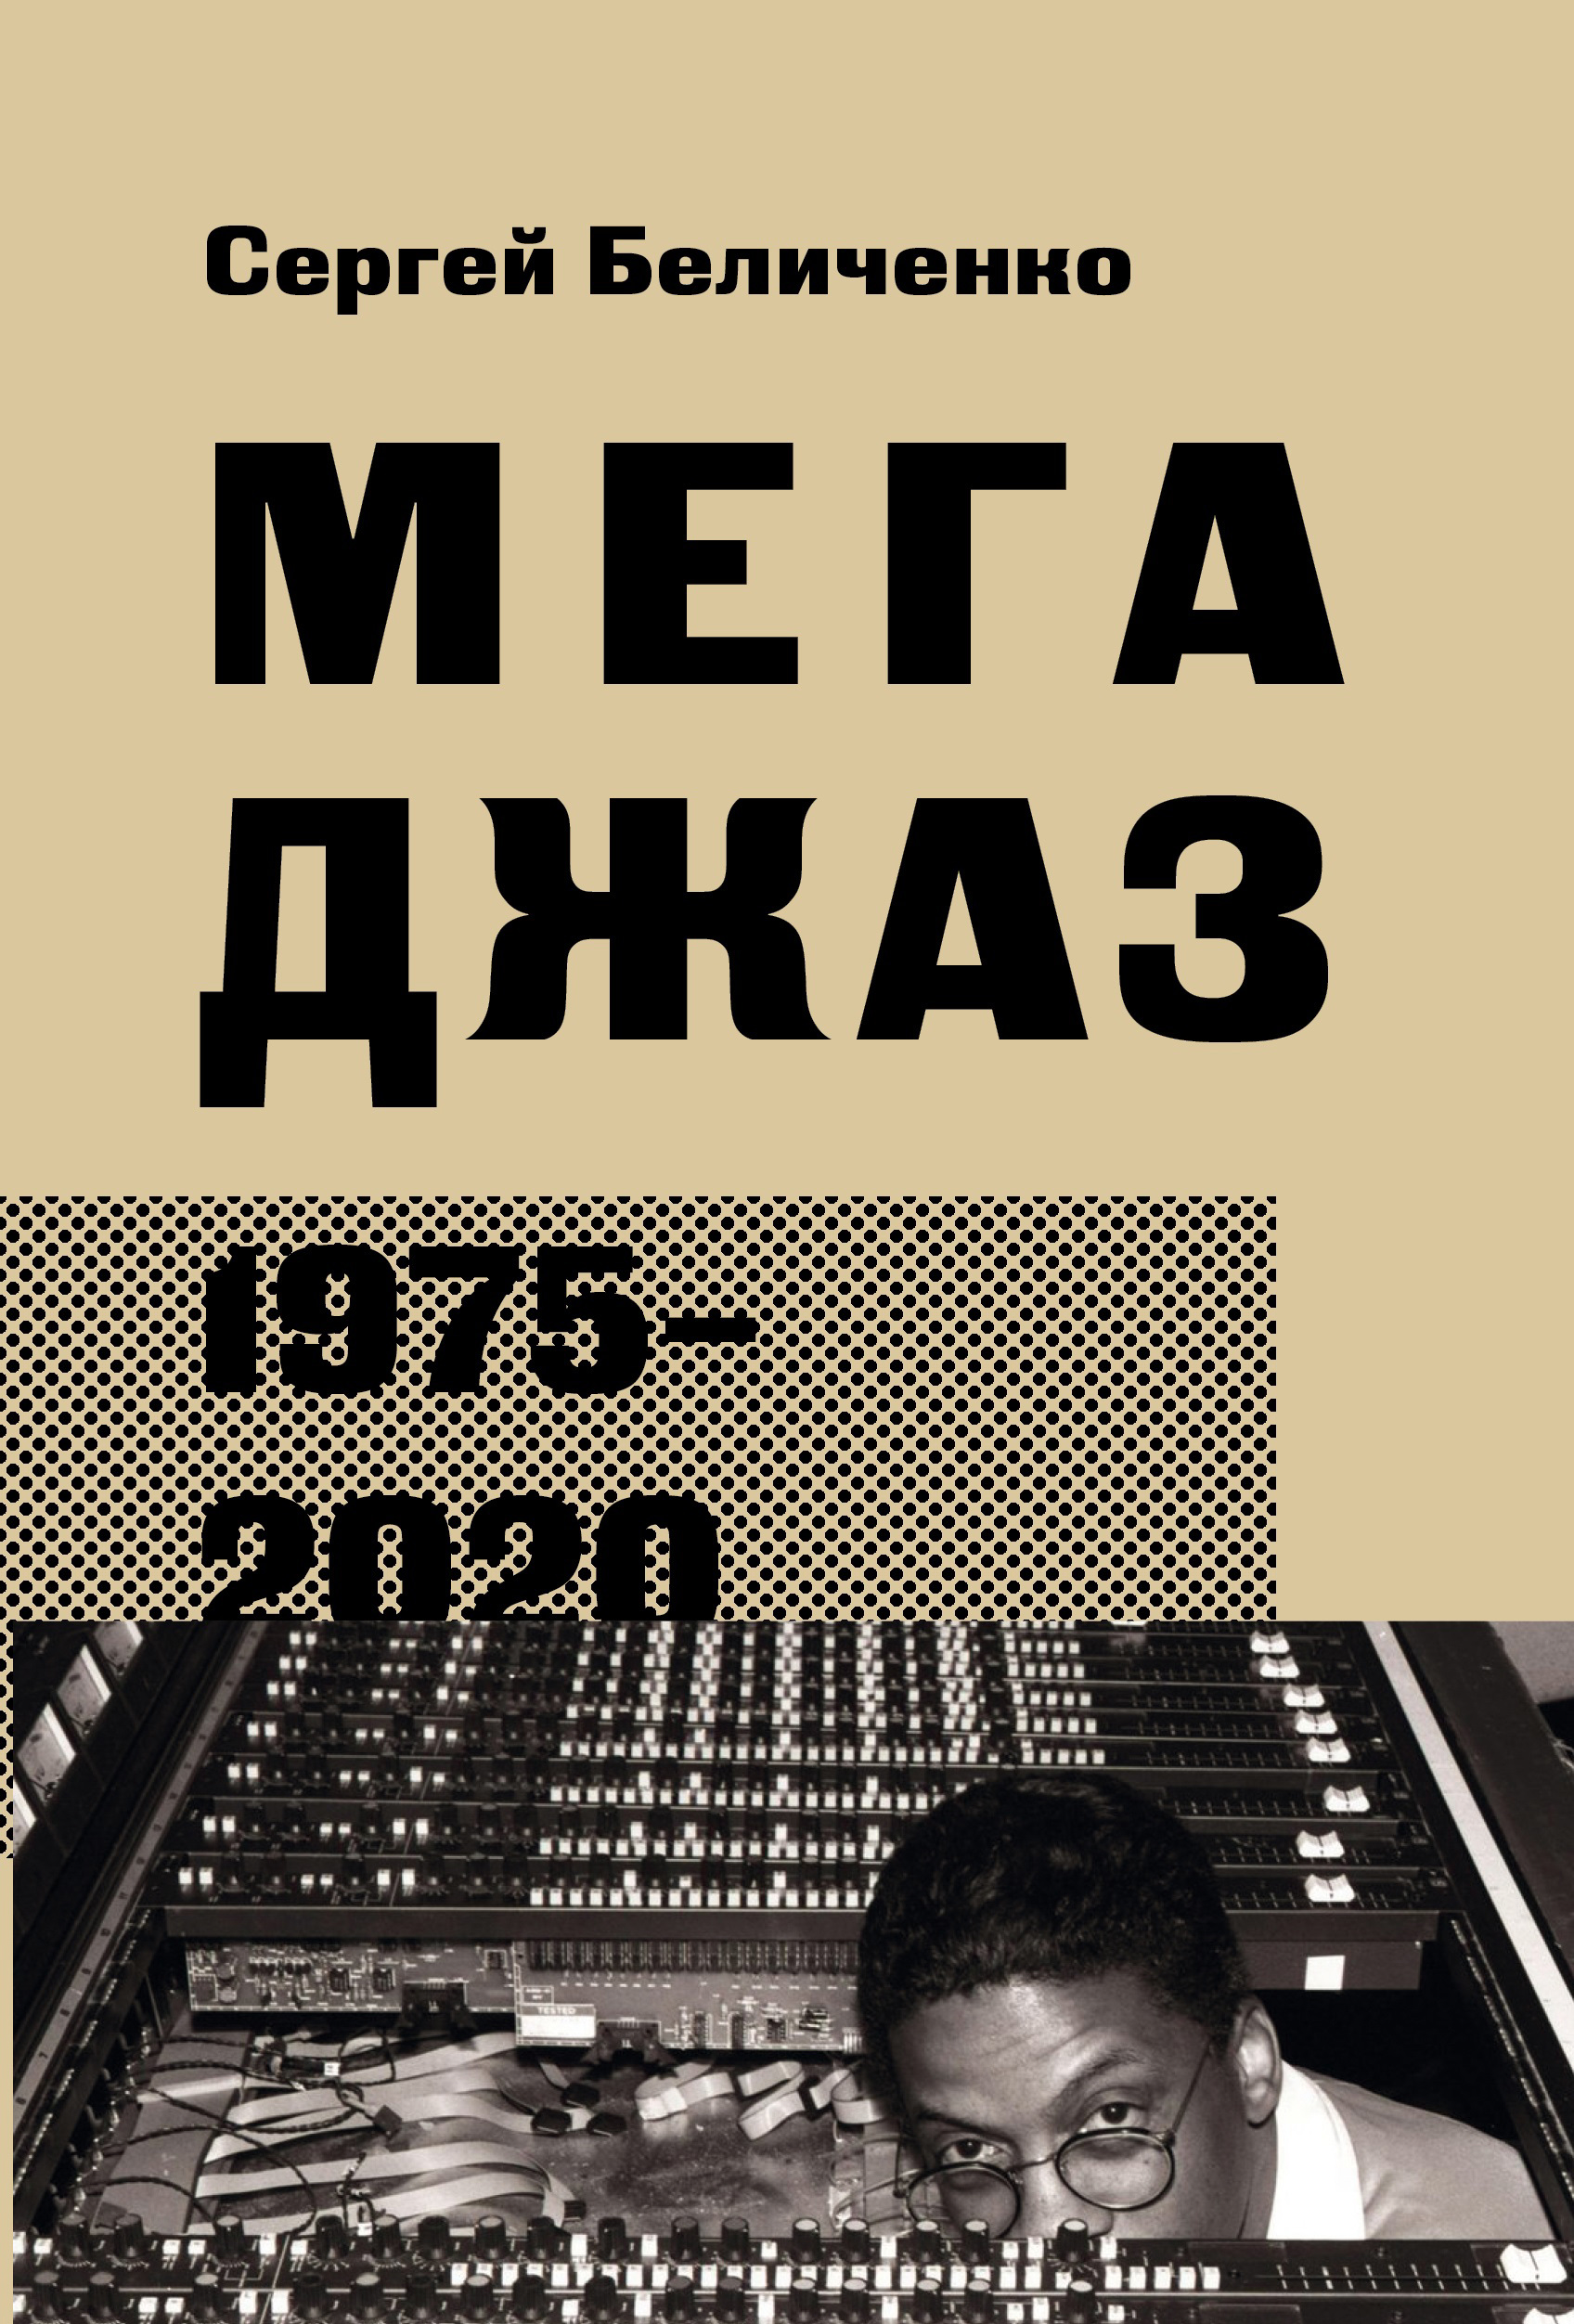  1975 2020 